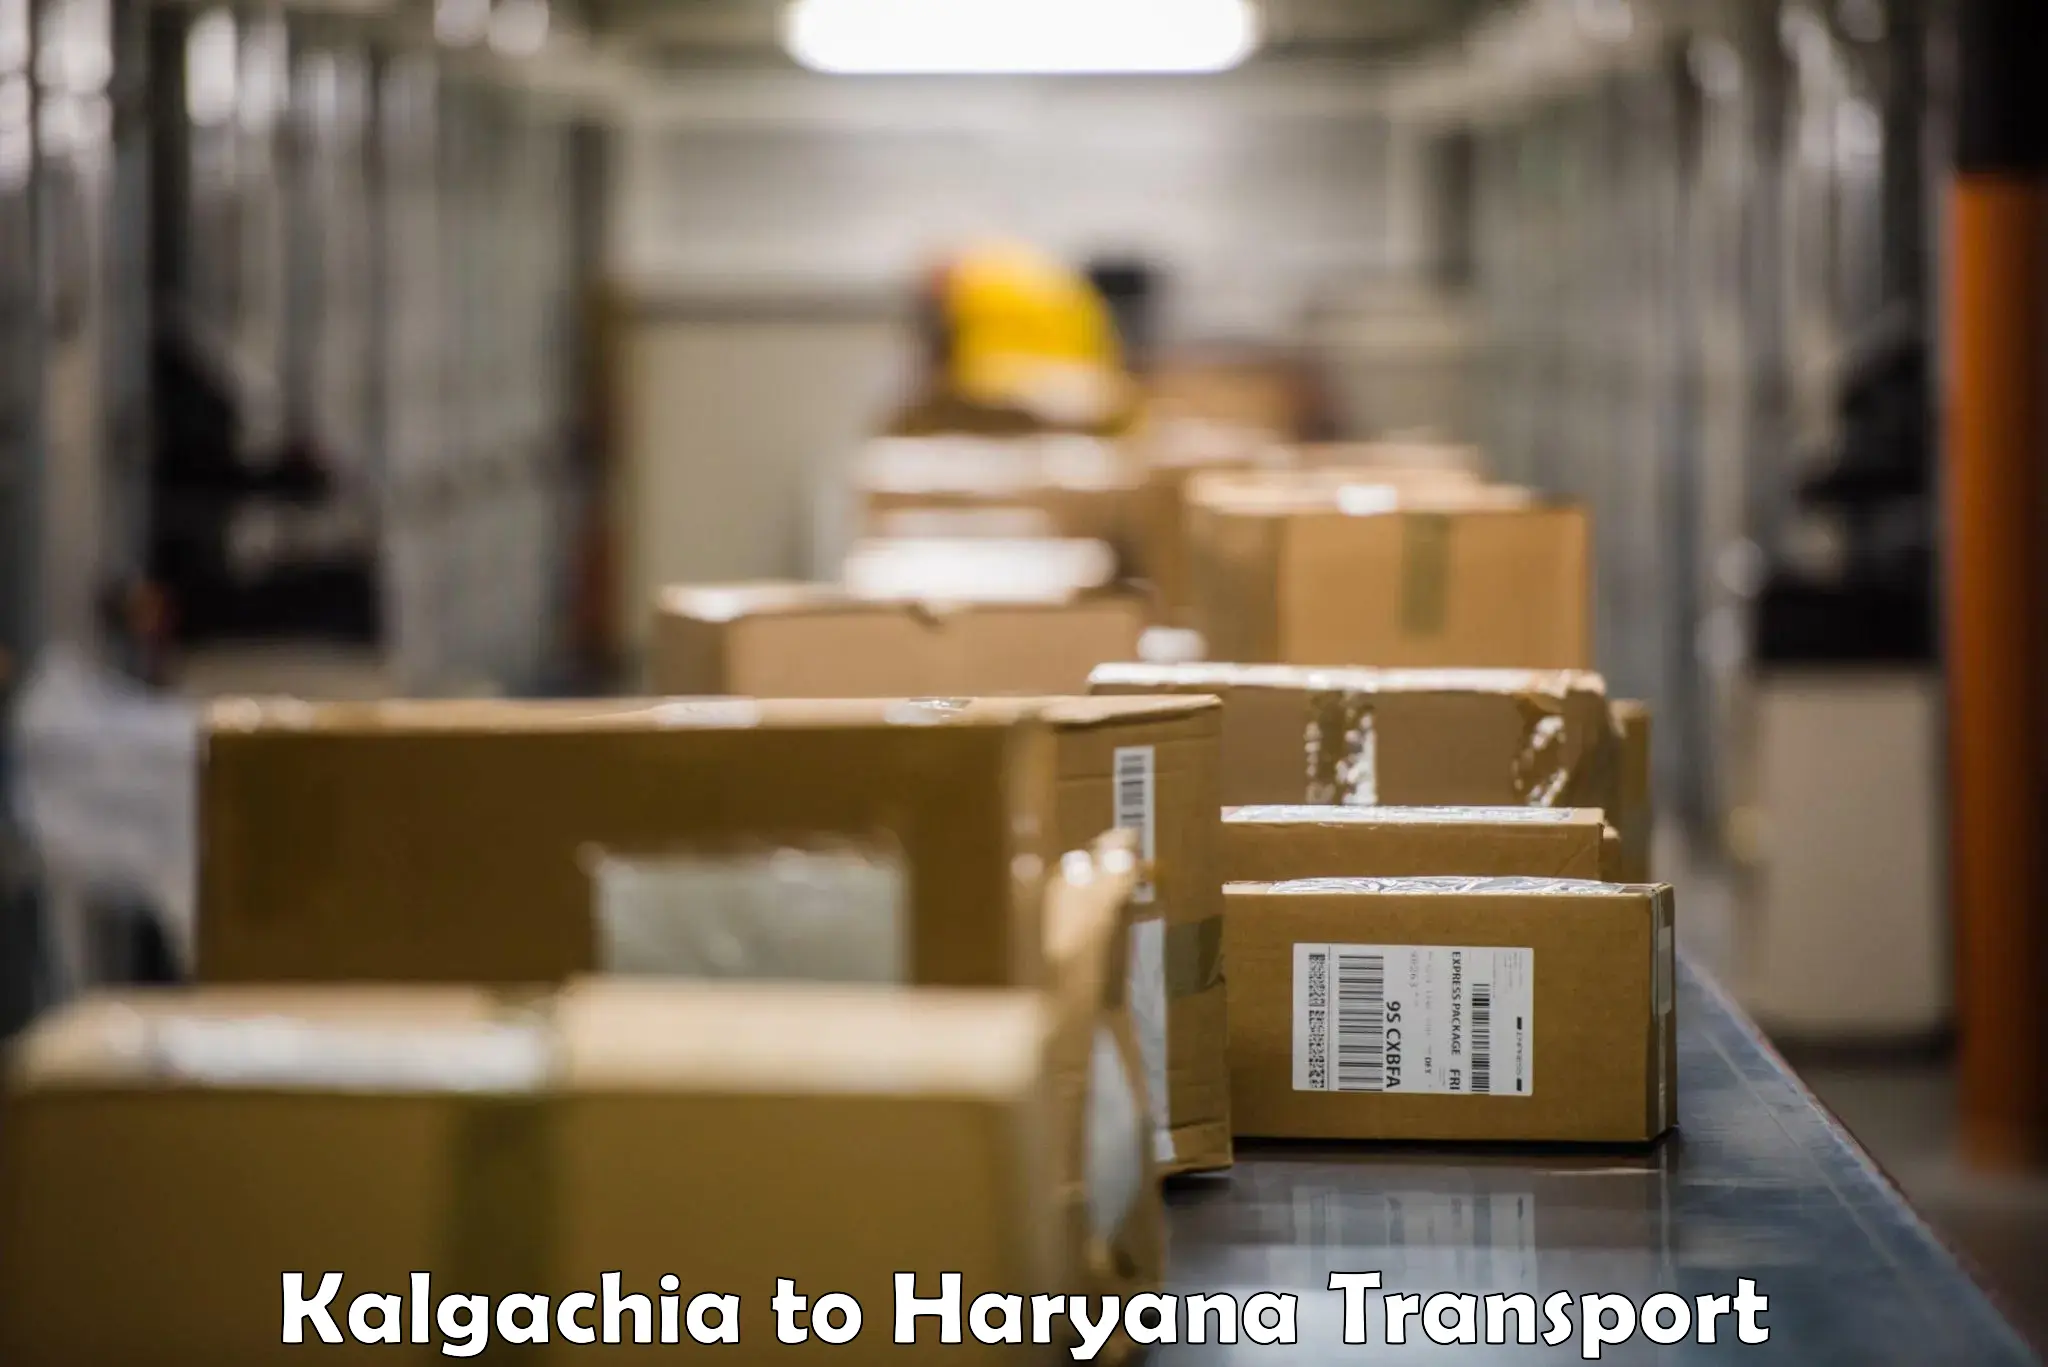 India truck logistics services Kalgachia to NCR Haryana